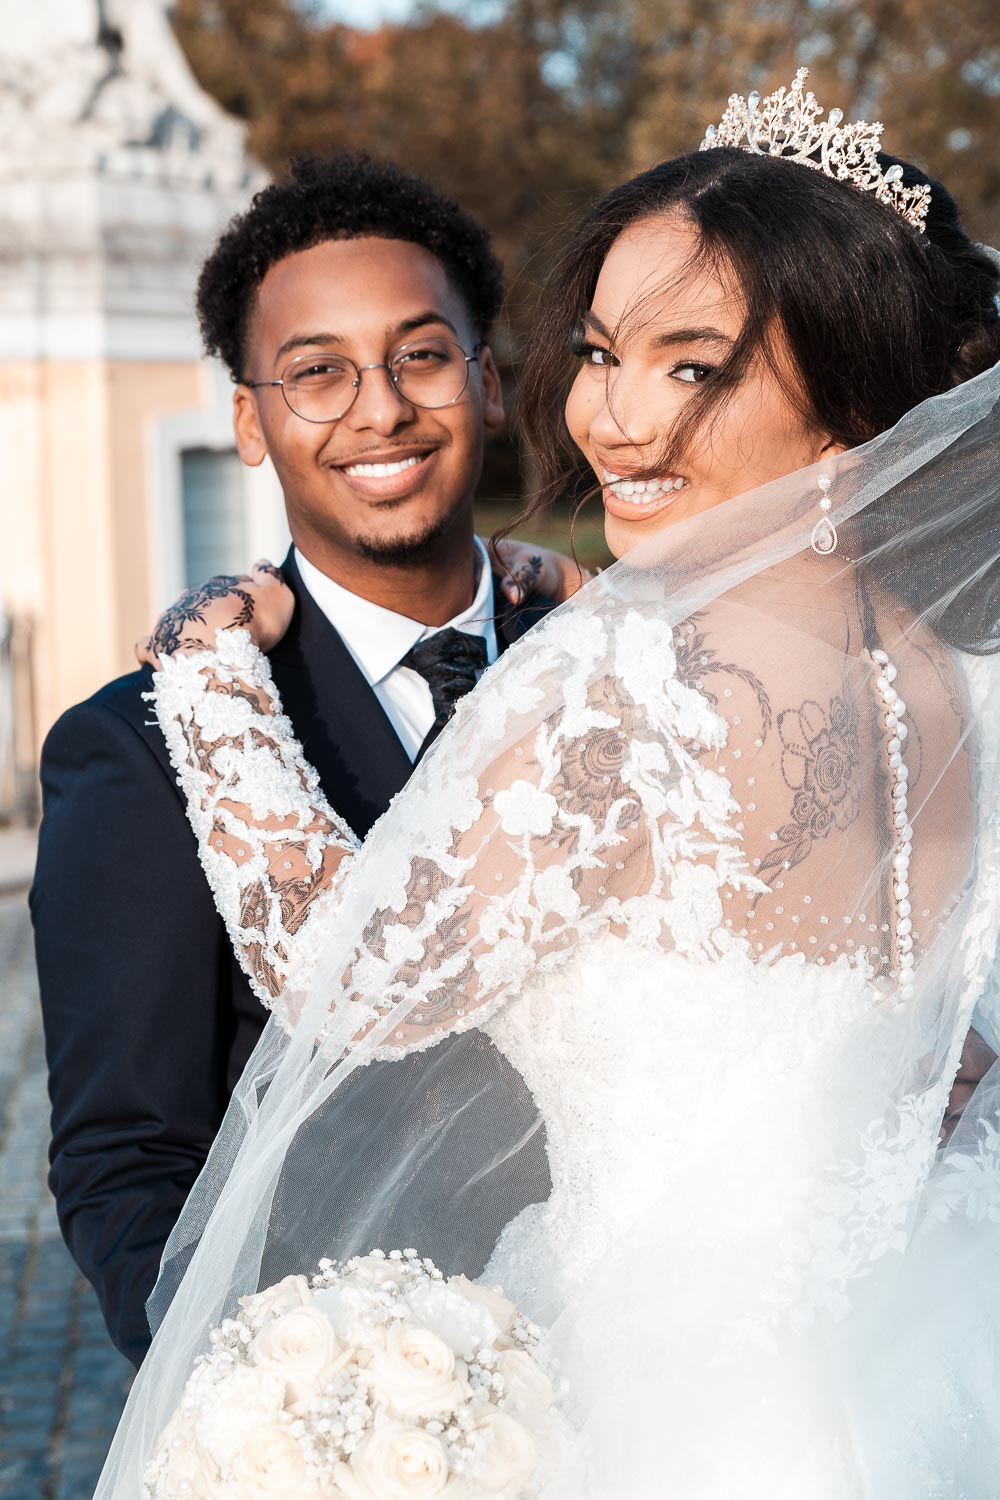 Braut mit Diadem umarmt Bräutigam, somalischer Bräutigam hat schöne weiße Zähne